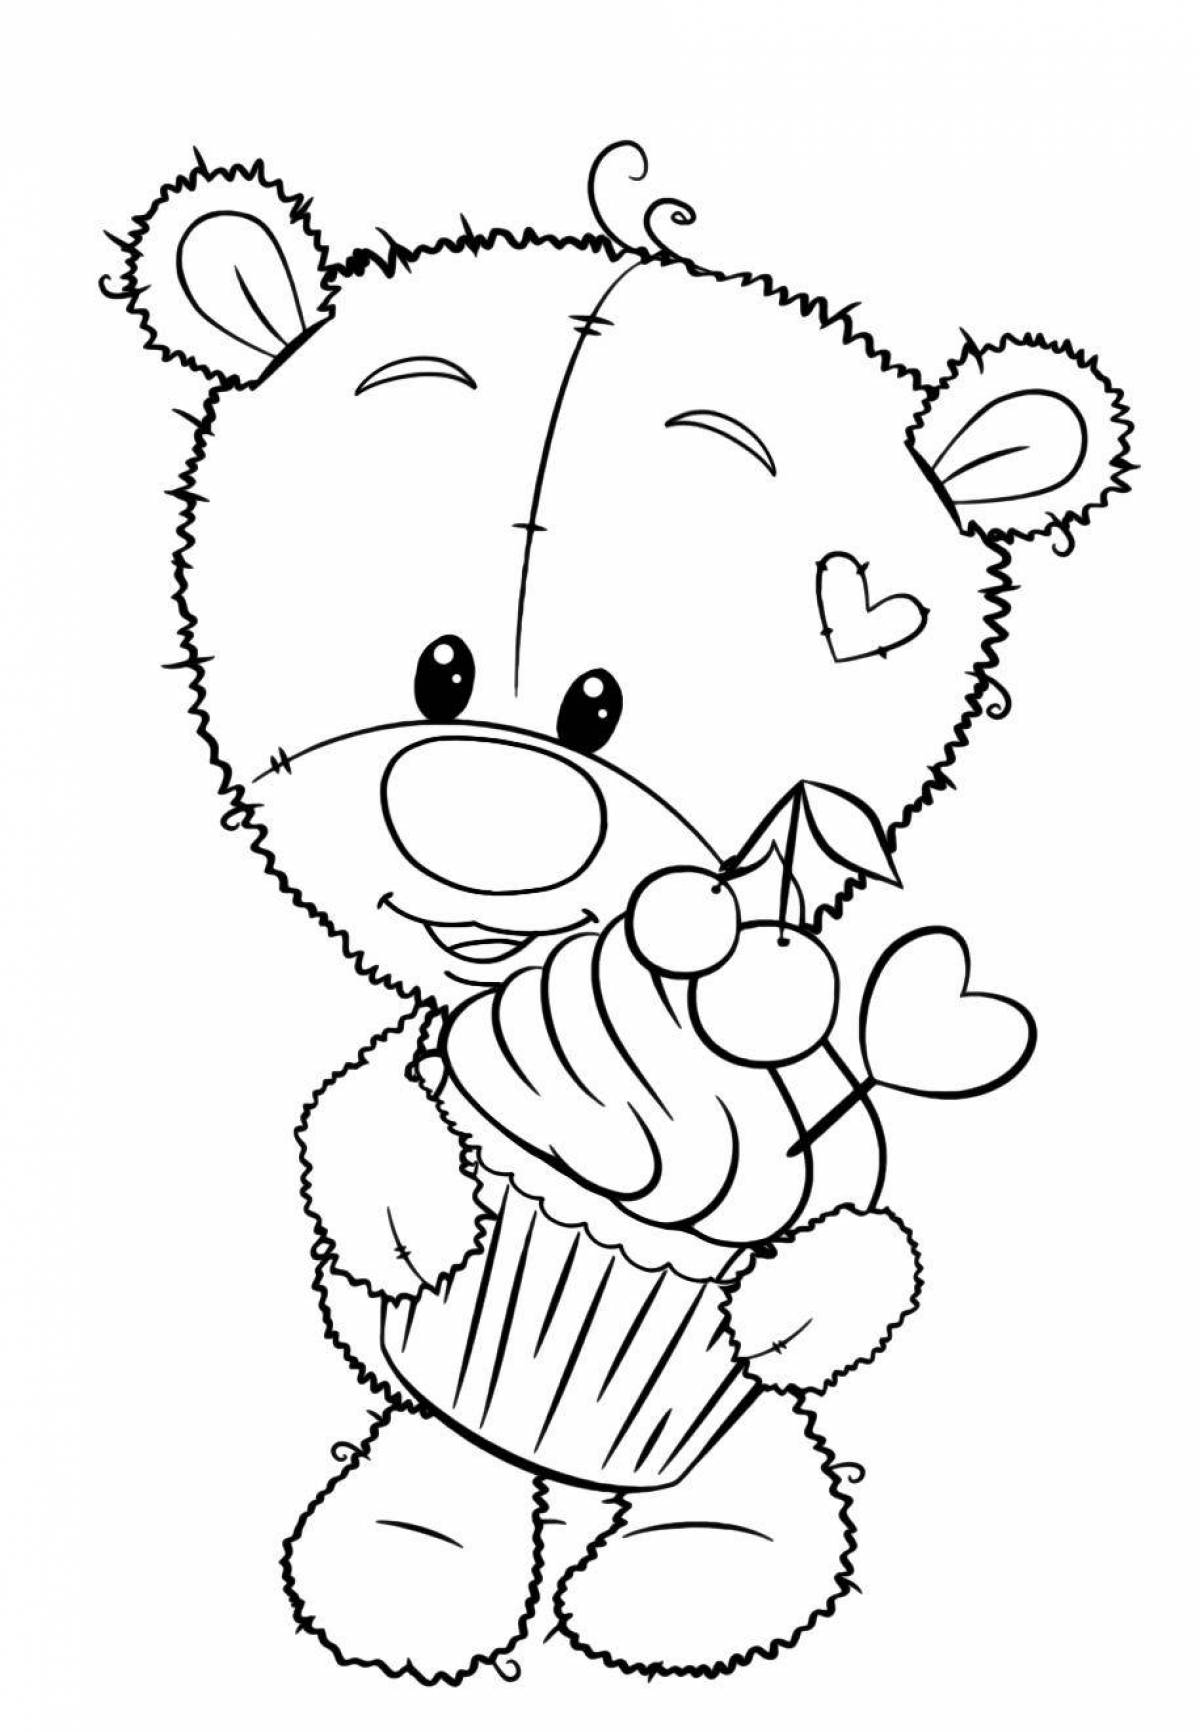 Coloring book shiny cute bear